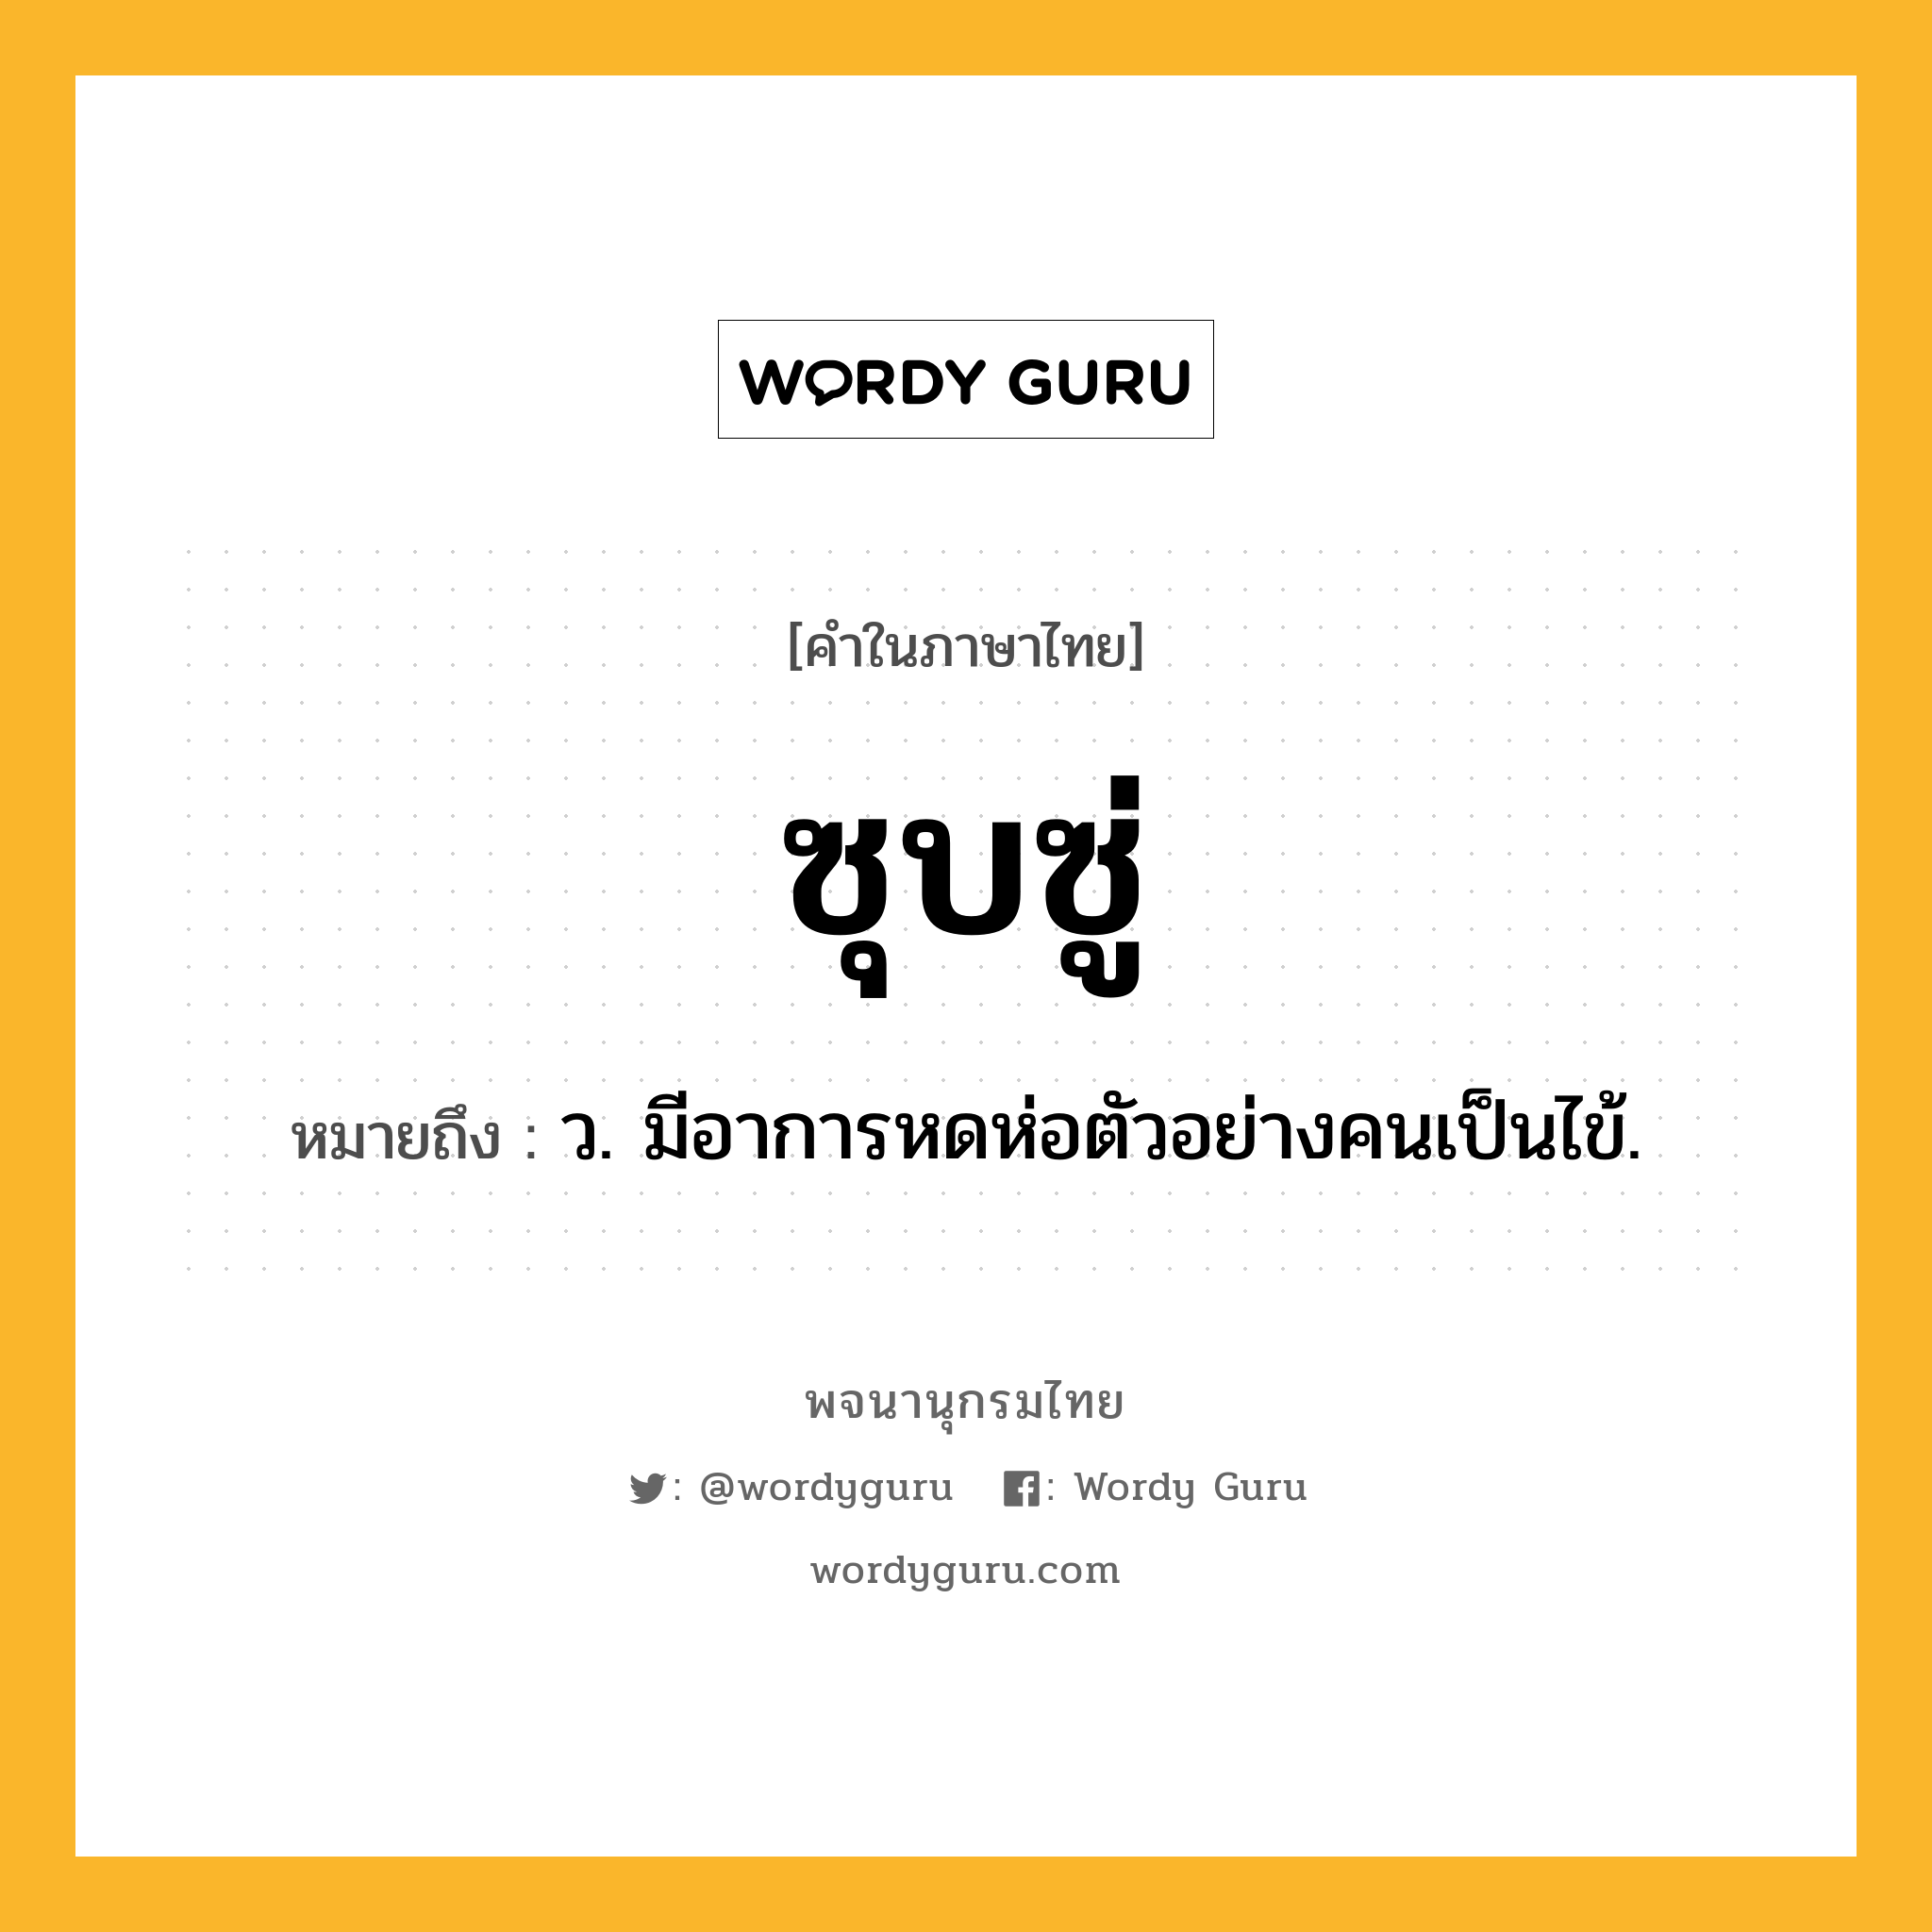 ซุบซู่ หมายถึงอะไร?, คำในภาษาไทย ซุบซู่ หมายถึง ว. มีอาการหดห่อตัวอย่างคนเป็นไข้.